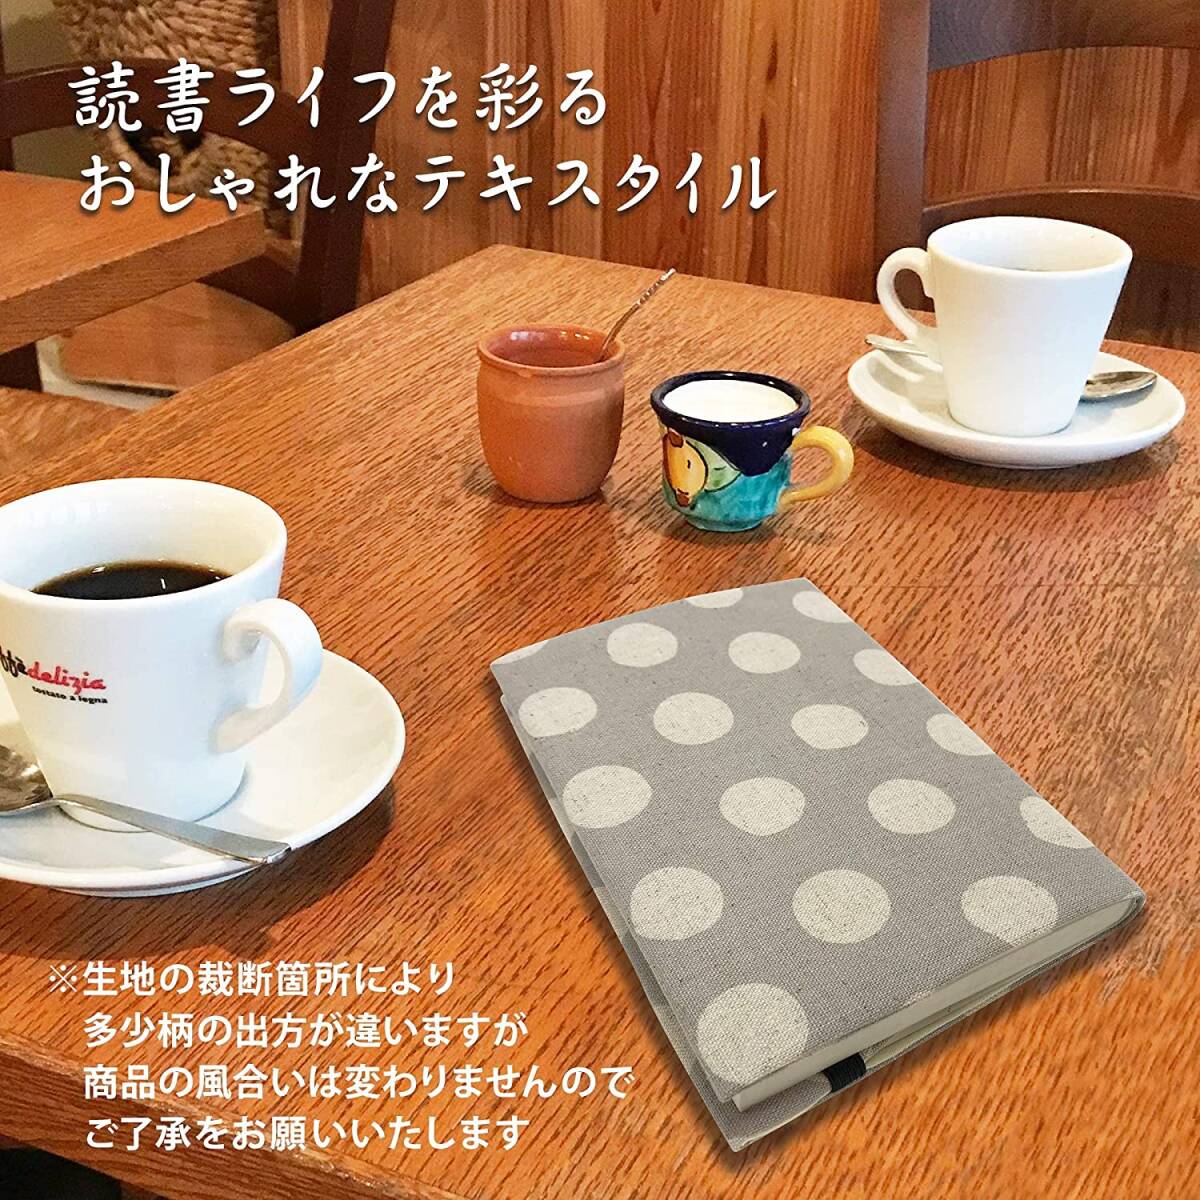  мир дизайн обложка для книги точка серый juA5 литературное искусство документ справочник специализация документ размер регулировка возможность чтение сделано в Японии рекламная закладка имеется 